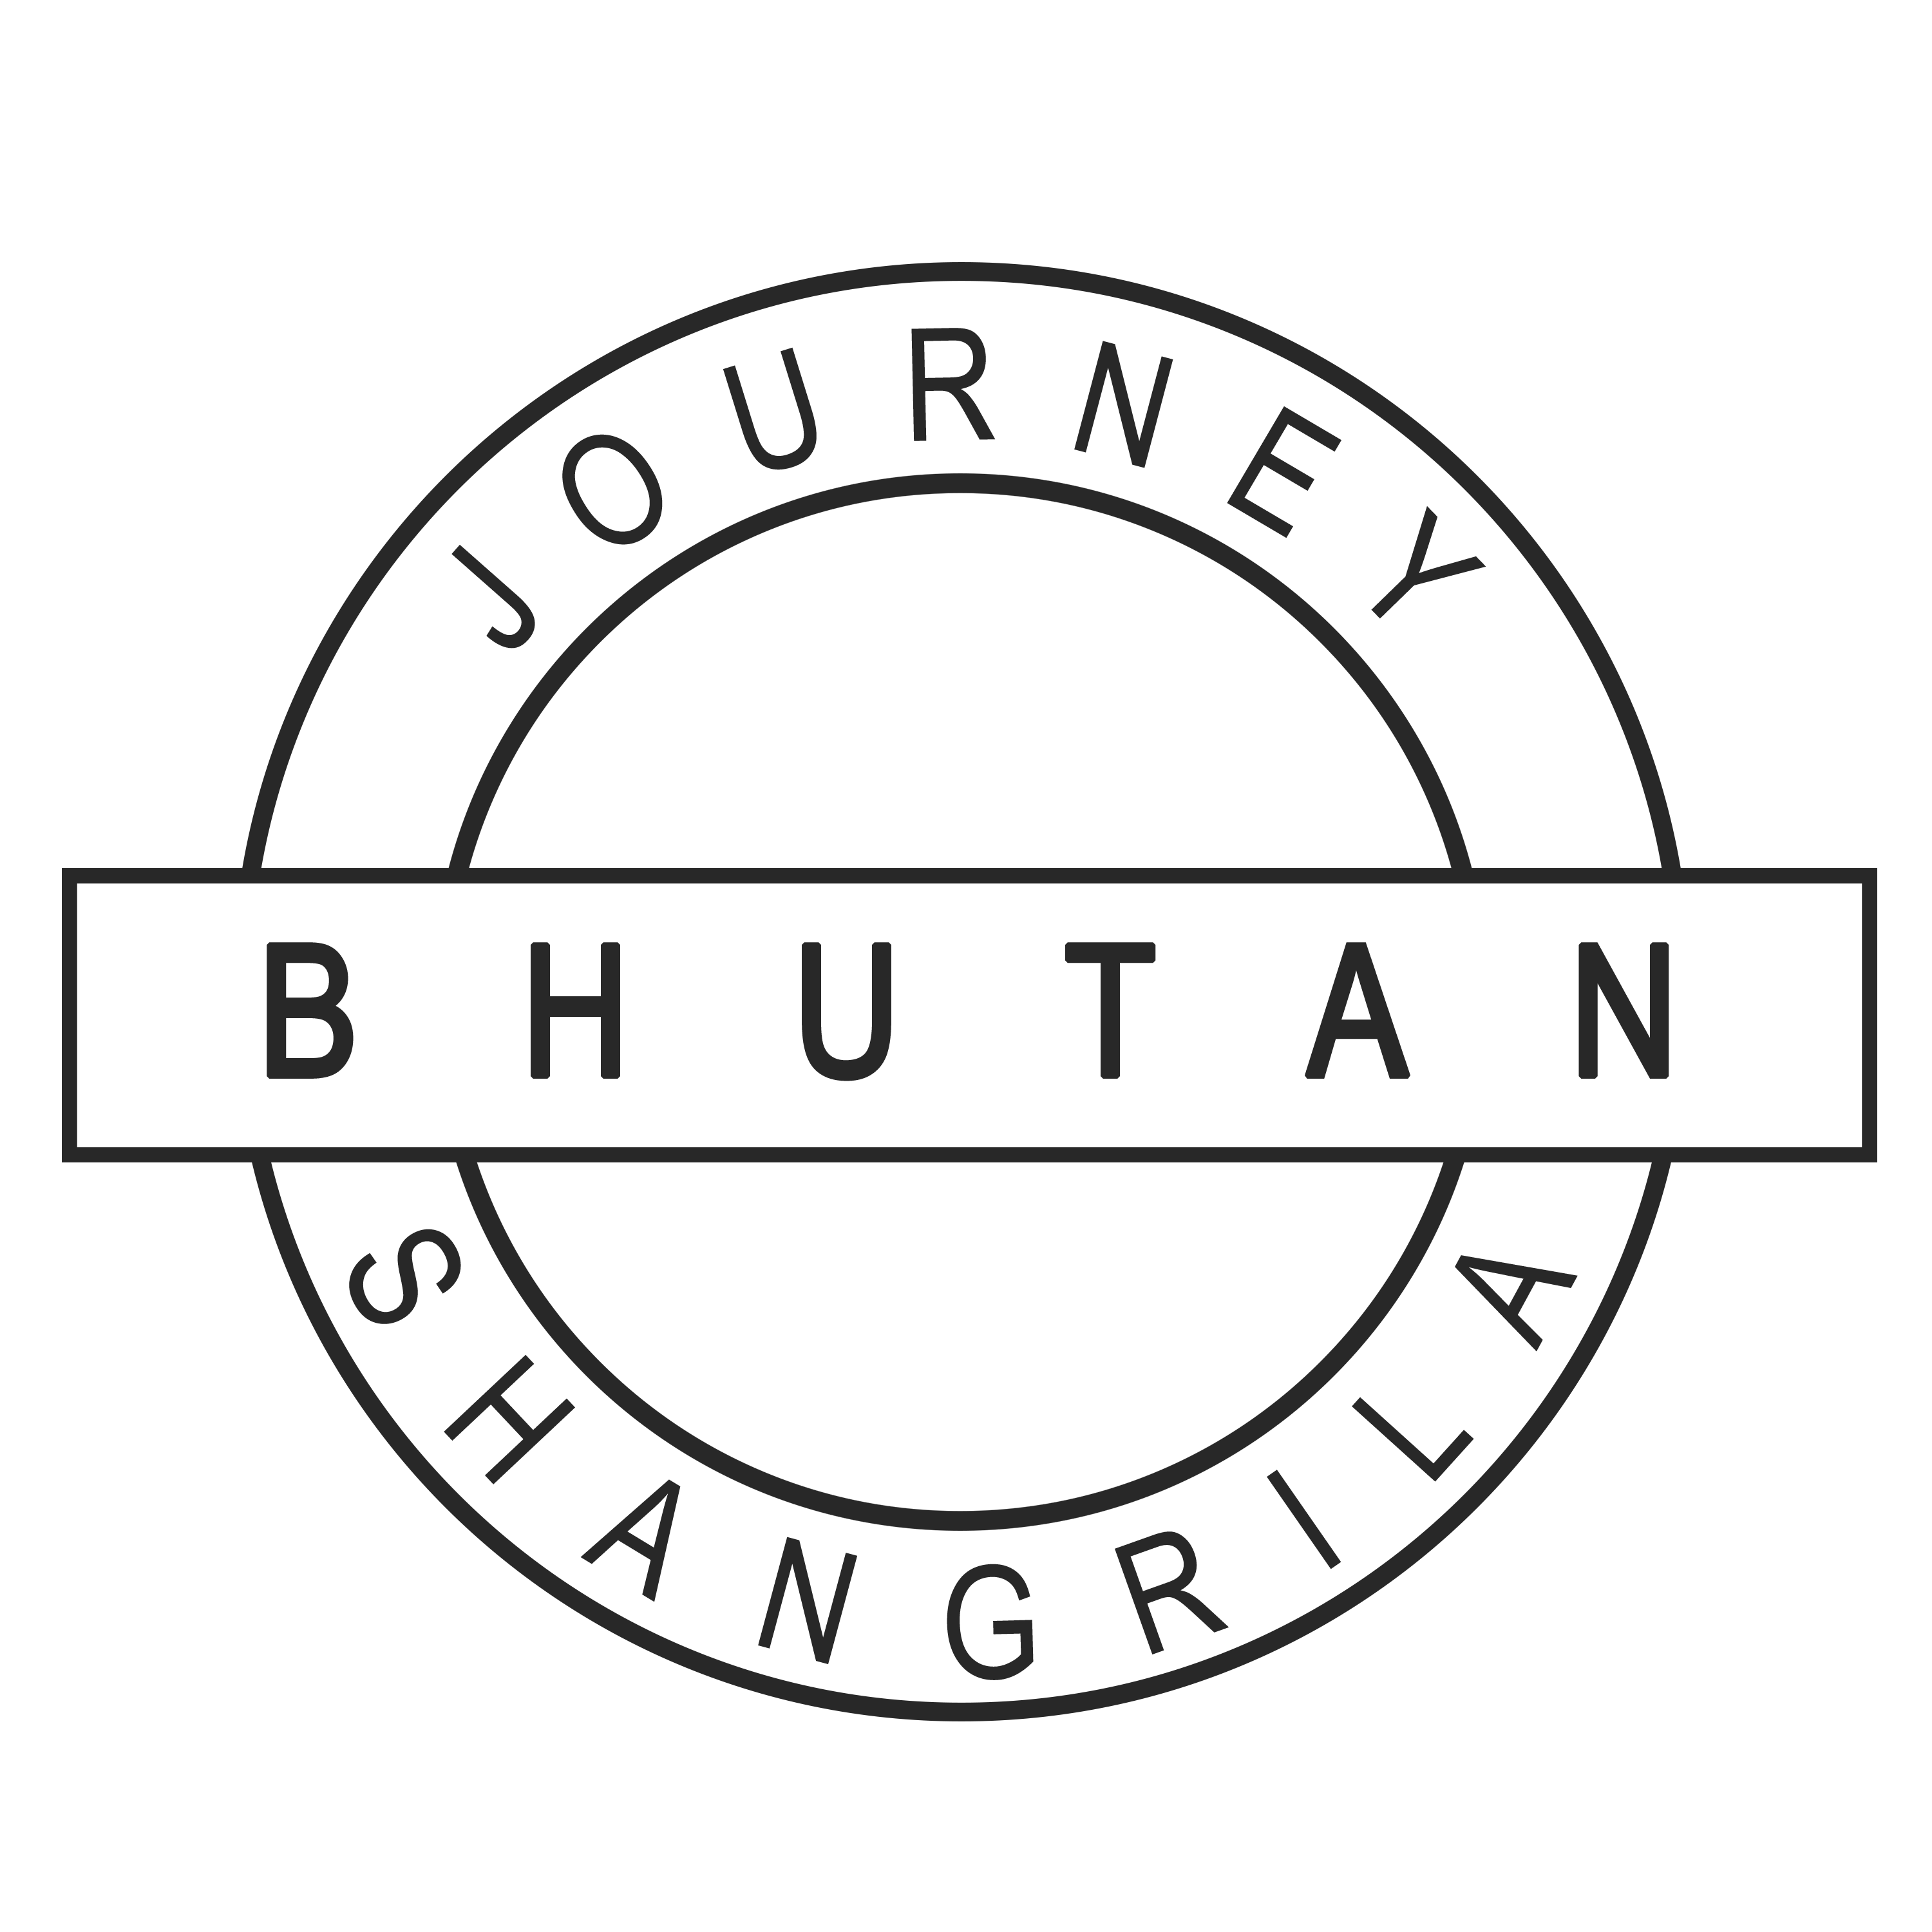 ABOUT BHUTAN